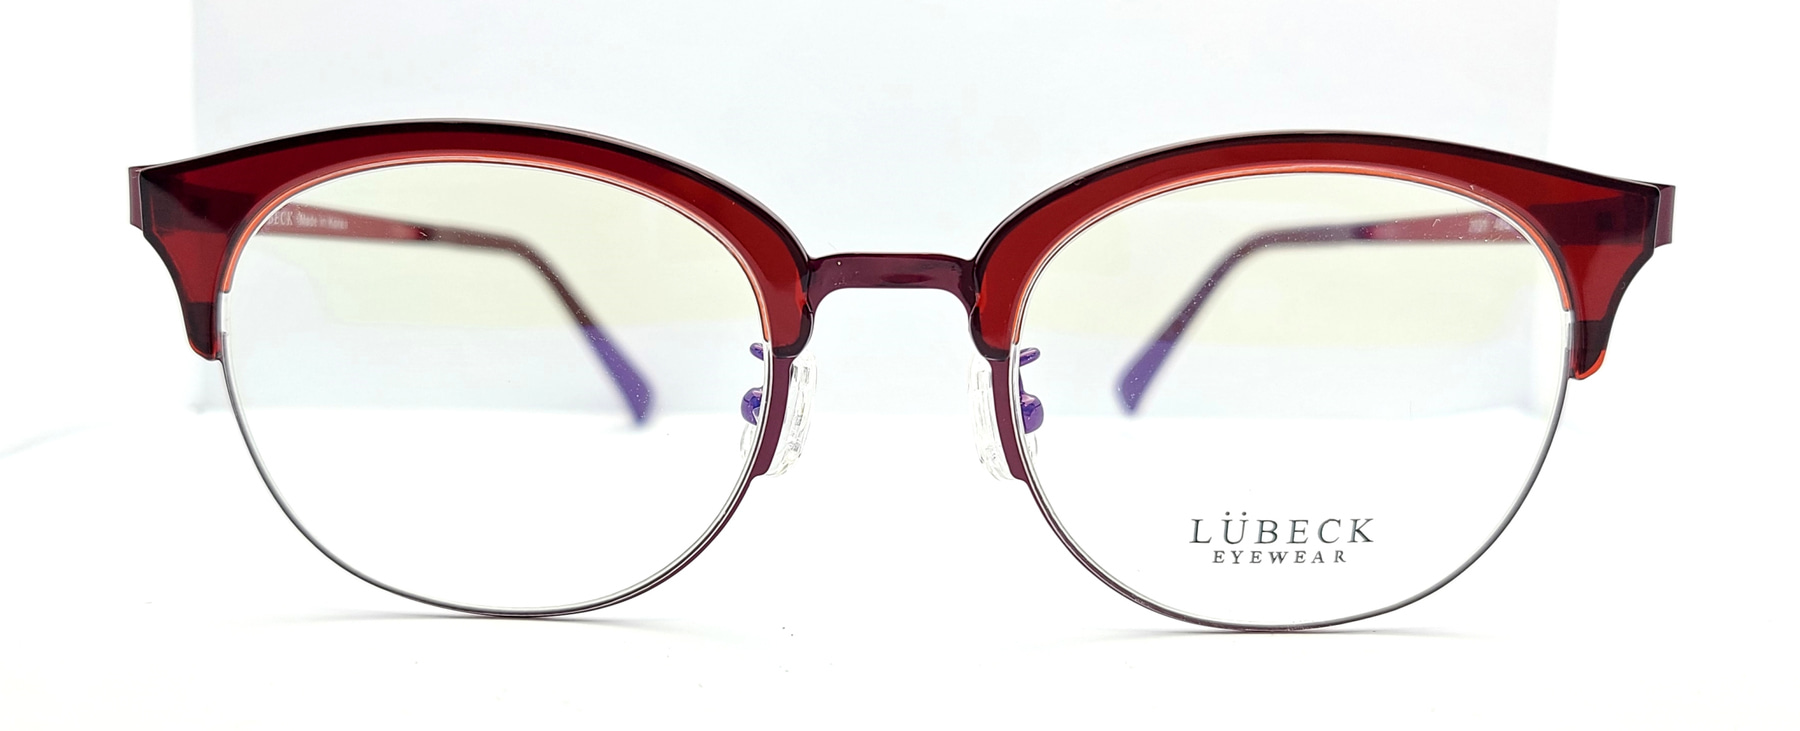 LUBECK 2031, Korean glasses, sunglasses, eyeglasses, glasses